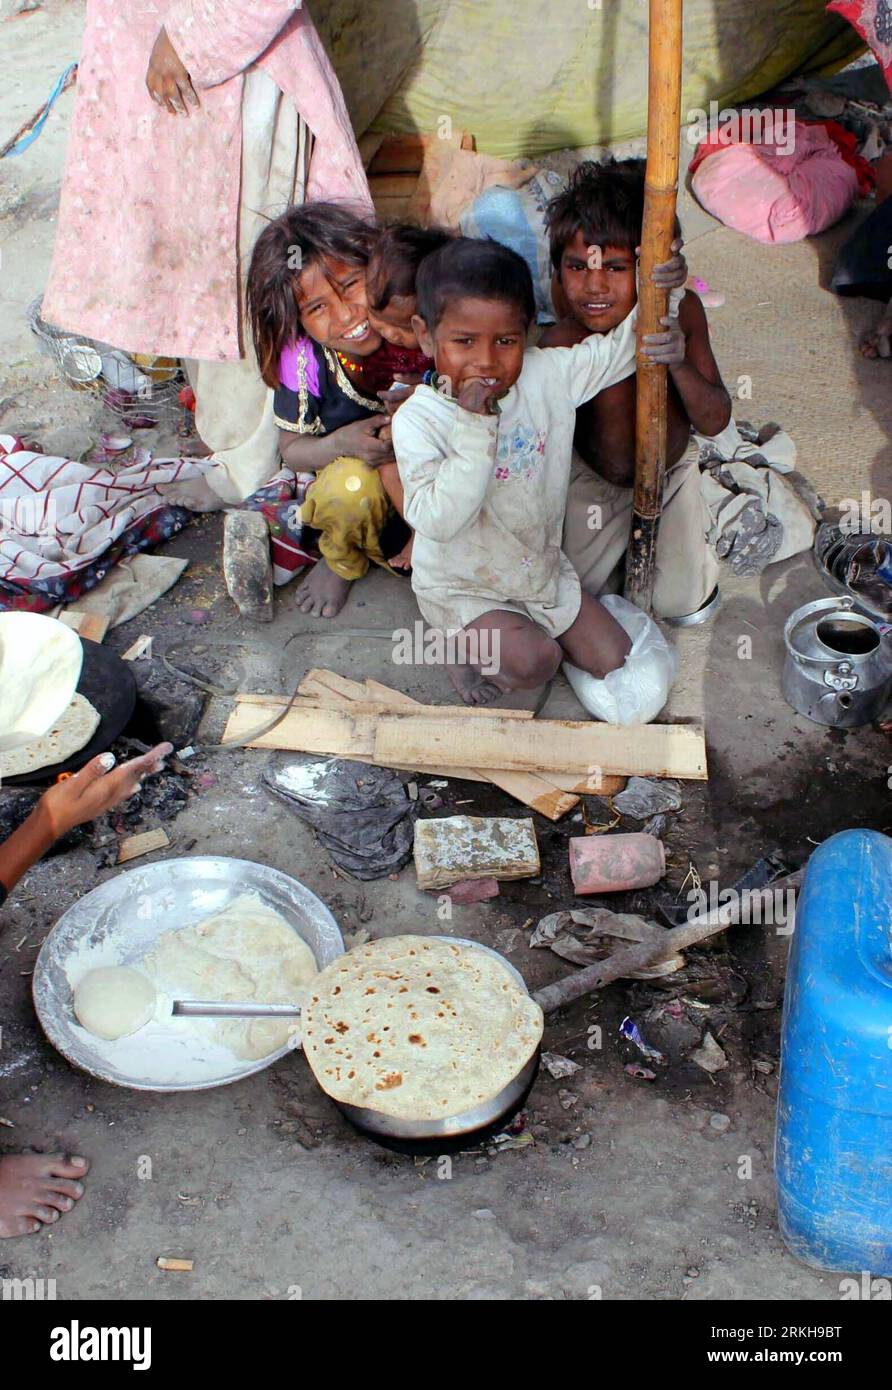 Bildnummer: 55757460 Datum: 14.08.2011 Copyright: imago/Xinhua (110814) -- QUETTA, 14. August 2011 (Xinhua) -- pakistanische Kinder reagieren auf den Fotografen, während sie vor ihrem provisorischen Zelt in einem Slum im südwestlichen pakistanischen Quetta am 14. August 2011 spielen. Es wird angenommen, dass etwa acht Millionen Afghanen unter Armutsgrenze leben und täglich von einem US-Dollar-Einkommen überleben. (Xinhua Photo/Hassan)(wn) AFGHANISTAN-QUETTA-POVERTY PUBLICATIONxNOTxINxCHN Gesellschaft Armut obdachlos Familie Kind Kinderarmut Premiere xbs 2011 hoch Bildnummer 55757460 Datum 14 08 2011 Copyright Imago XINHUA Quetta Stockfoto